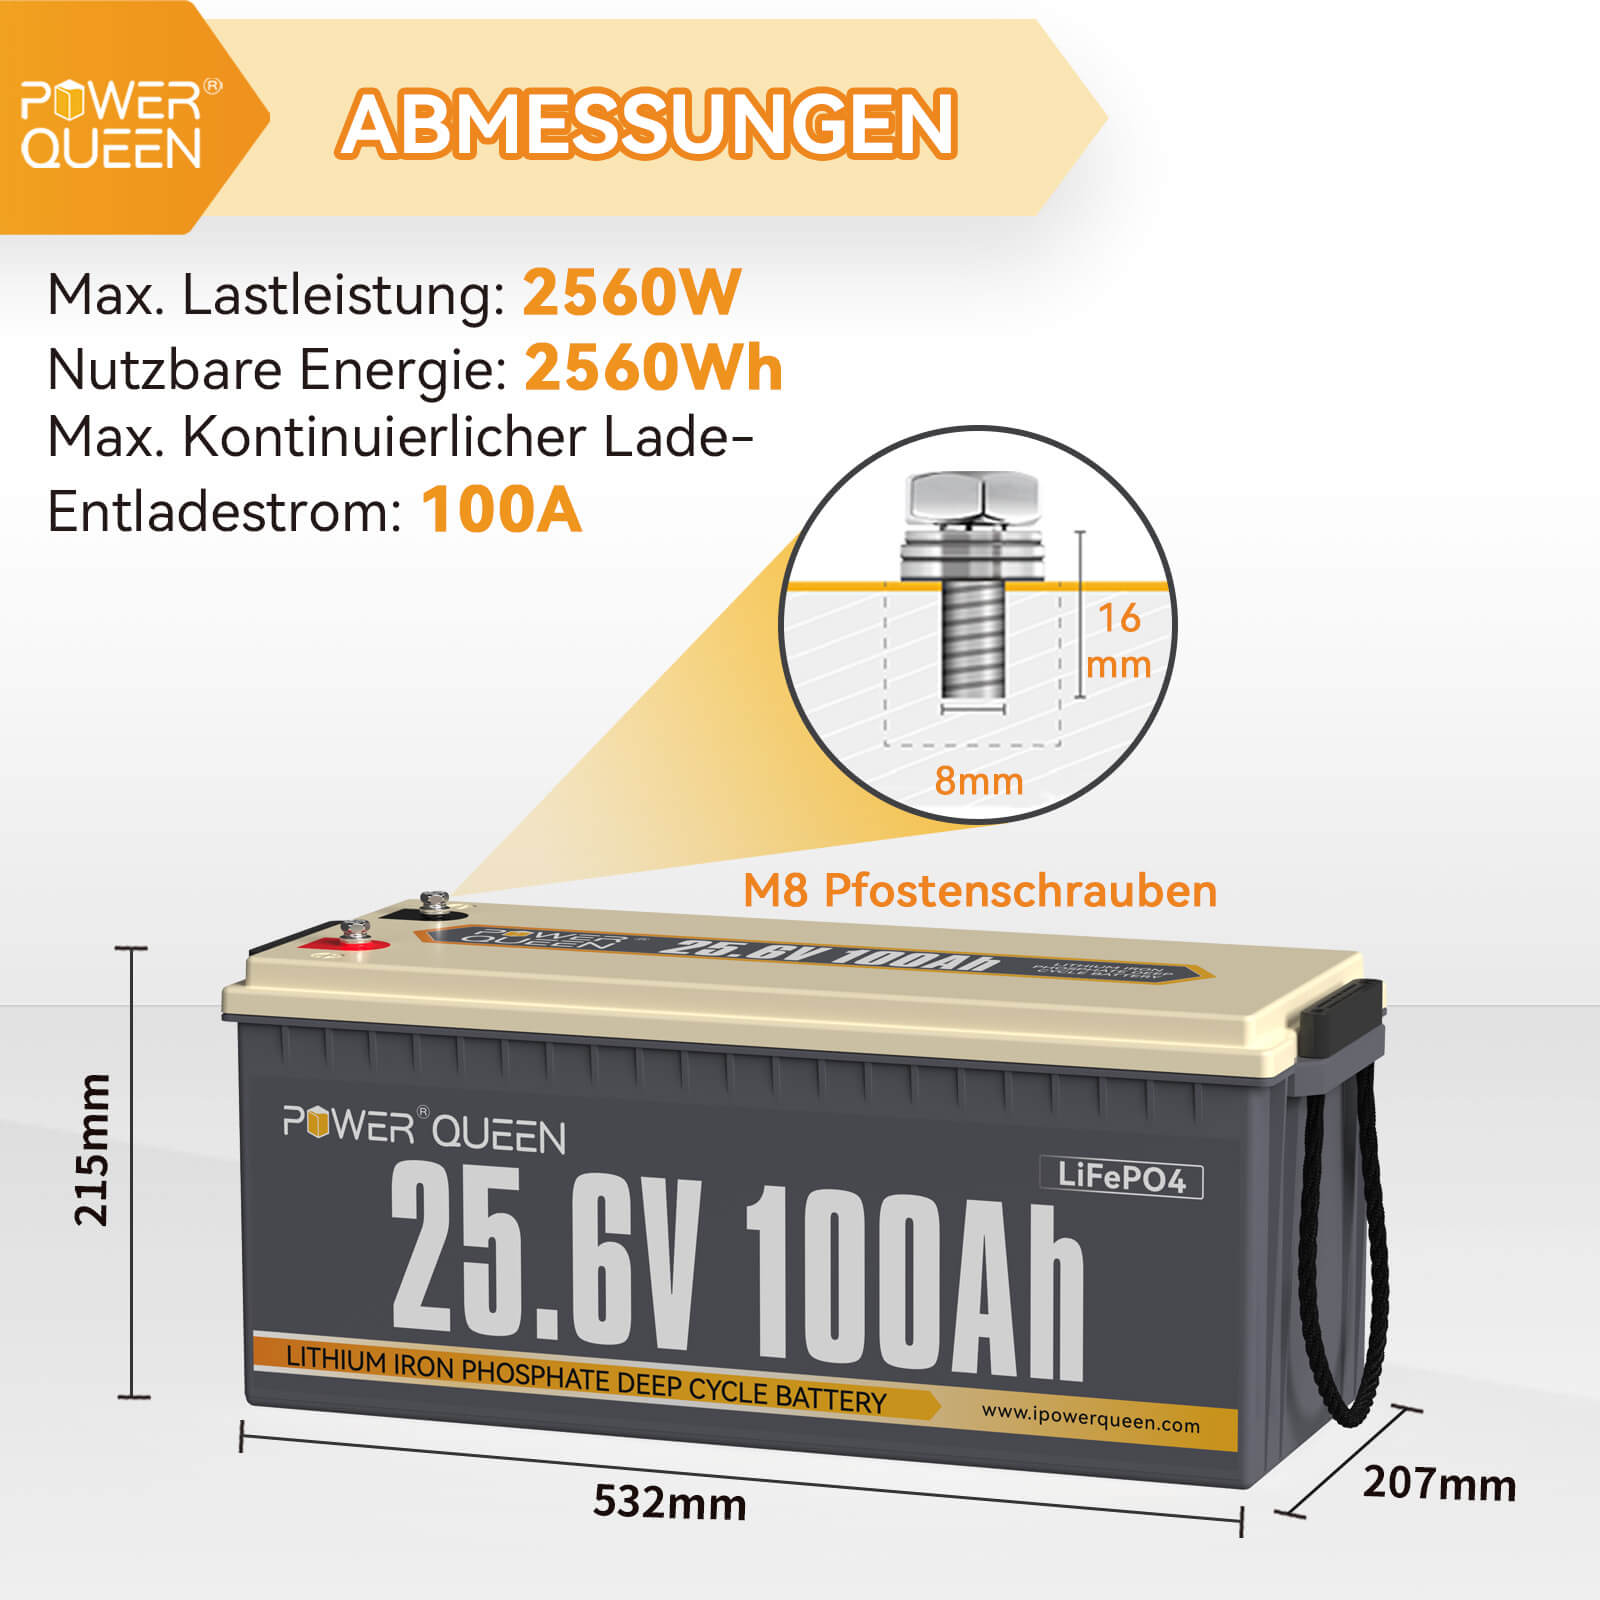 Come nuovo: batteria Power Queen 25,6 V 100 Ah LiFePO4, BMS integrato da 100 A.